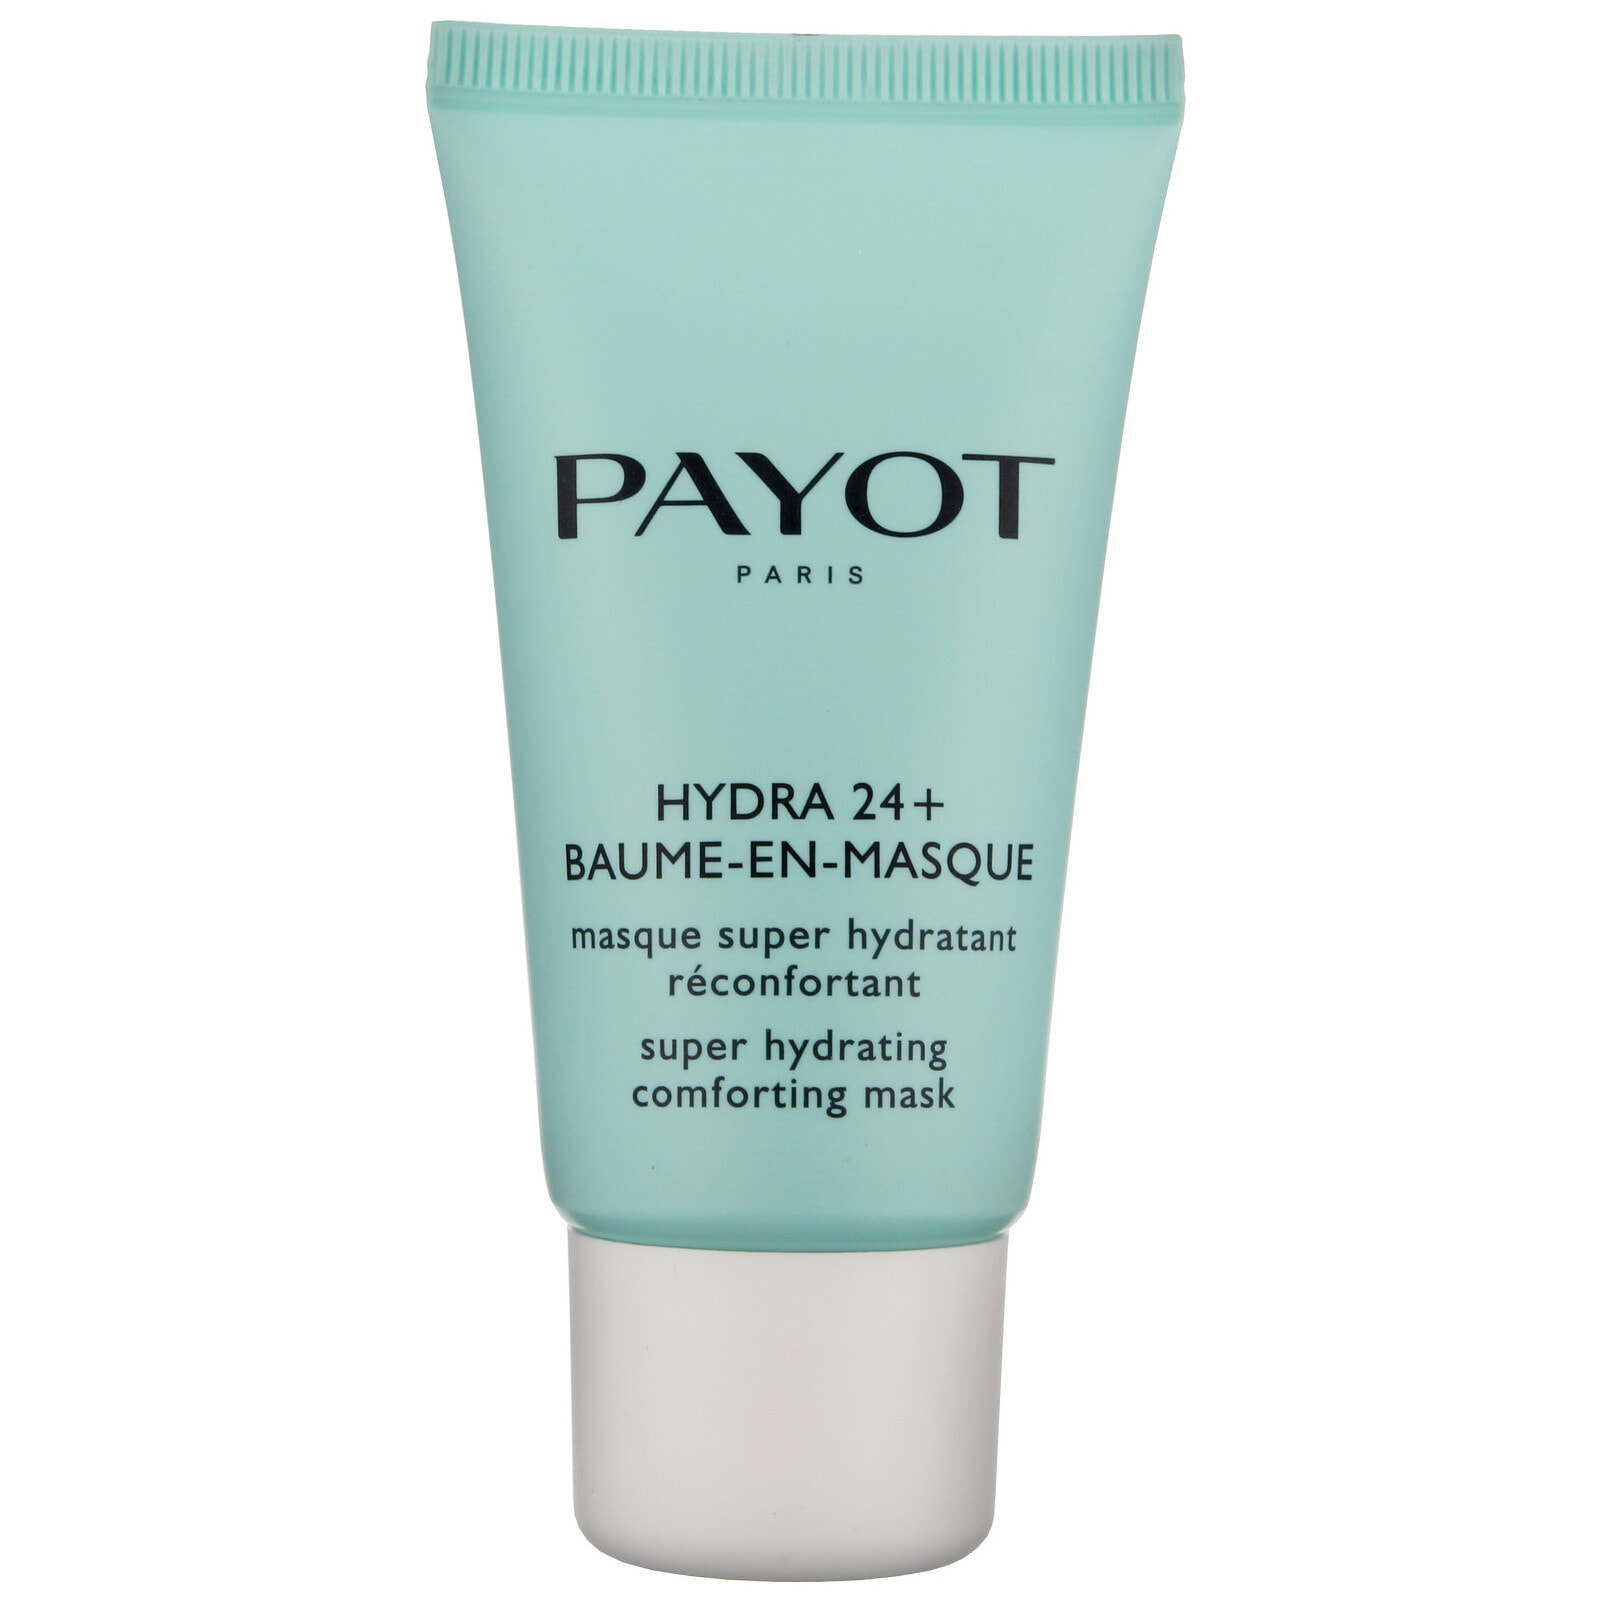 Payot Hydra 24+ Baume-En-Masque Суперувлажняющая успокаивающая маска мгновенного действия, для всех типов кожи 50 мл